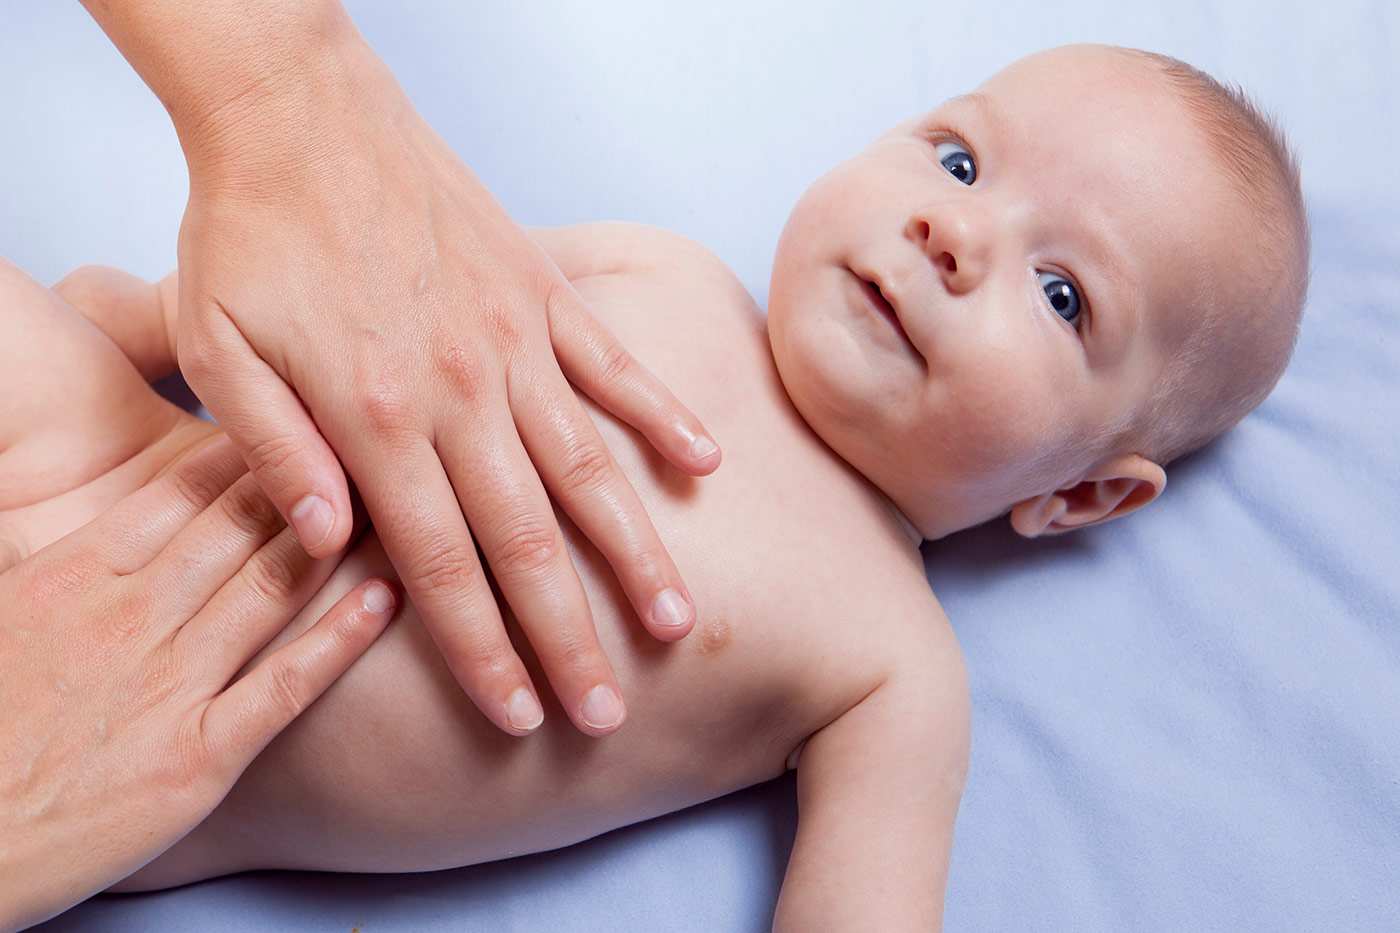 Introbild Babymassage Ablauf